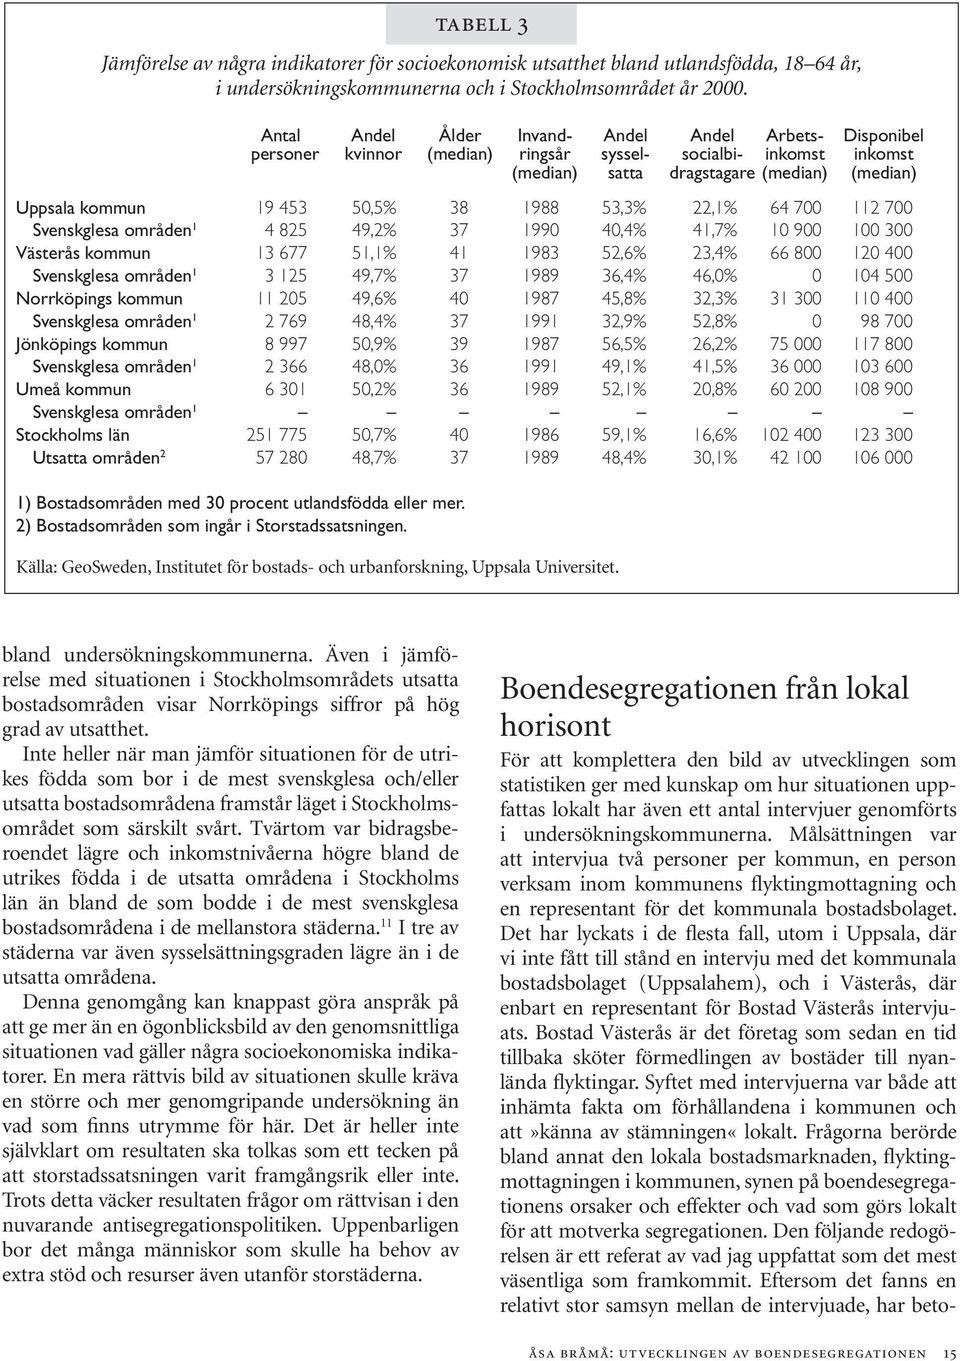 49,7% 37 1989 36,4% 46,0% 0 104 500 Norrköpings kommun 11 205 49,6% 40 1987 45,8% 32,3% 31 300 110 400 Svenskglesa områden 1 2 769 48,4% 37 1991 32,9% 52,8% 0 98 700 Jönköpings kommun 8 997 50,9% 39